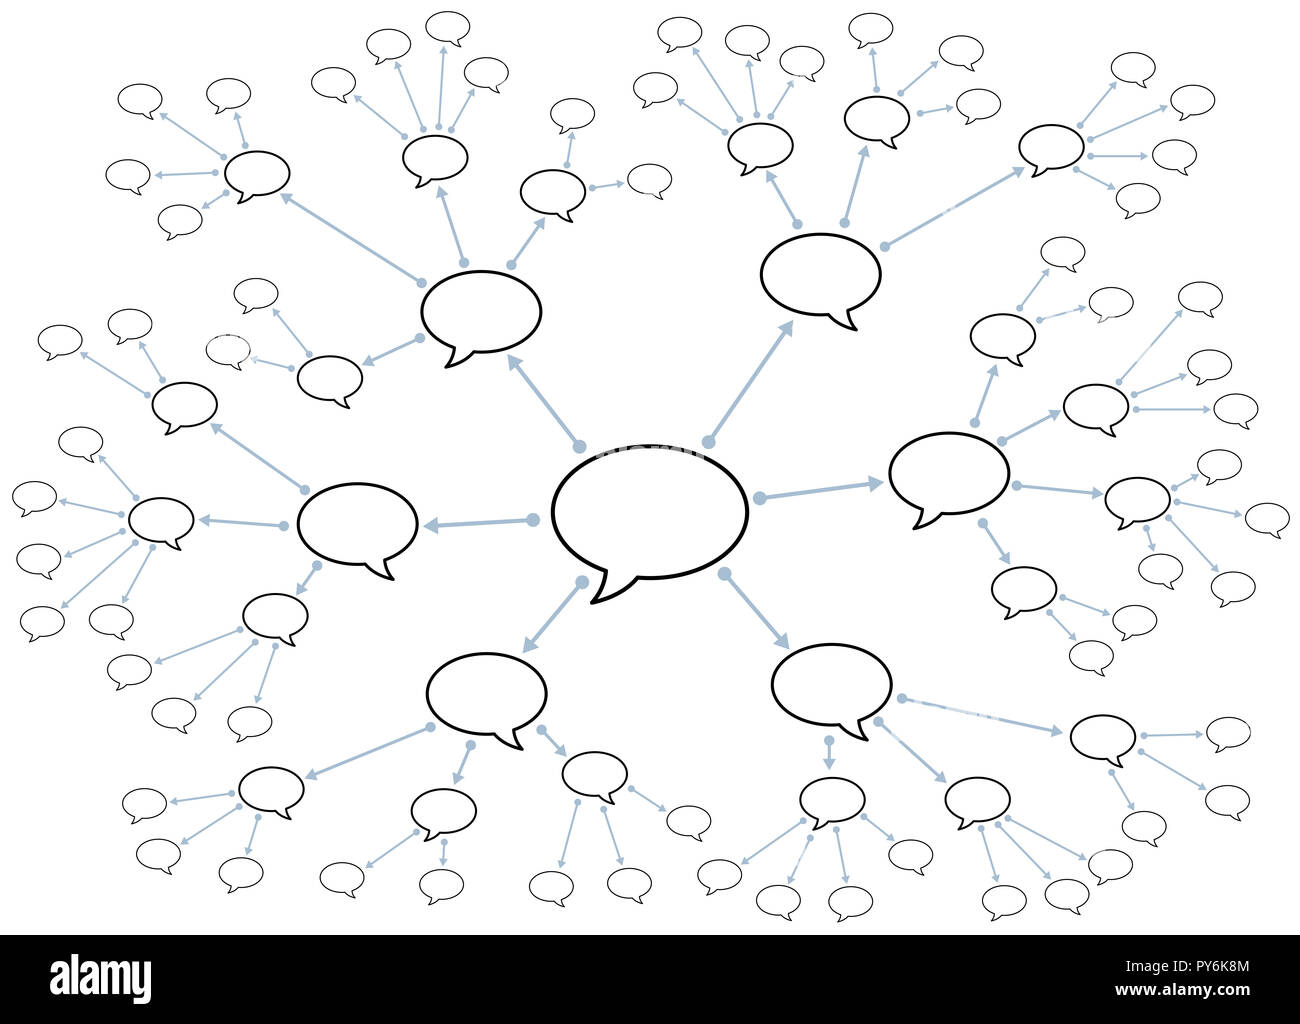 Netzwerk mit Sprechblasen. Symbolisch für Gerüchte, Klatsch Fabrik, Weitergabe von Informationen oder den Austausch von Wissen. Stockfoto